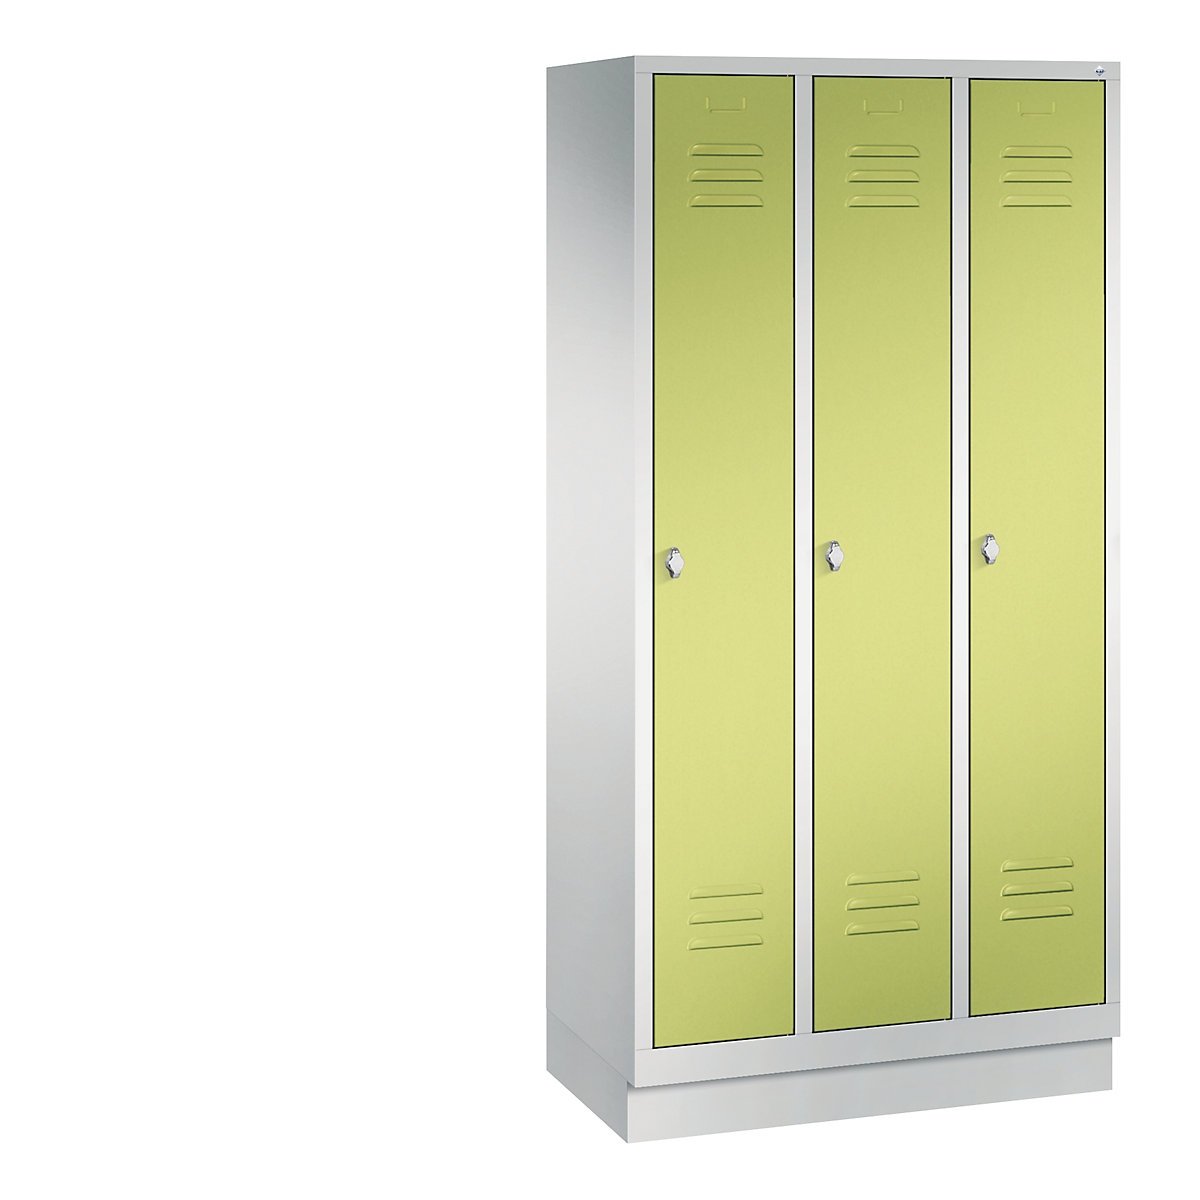 Garderobna omara CLASSIC s podnožjem – C+P, 3 predelki, širina 300 mm/predelek, svetlo sive / rumeno zelene barve-6